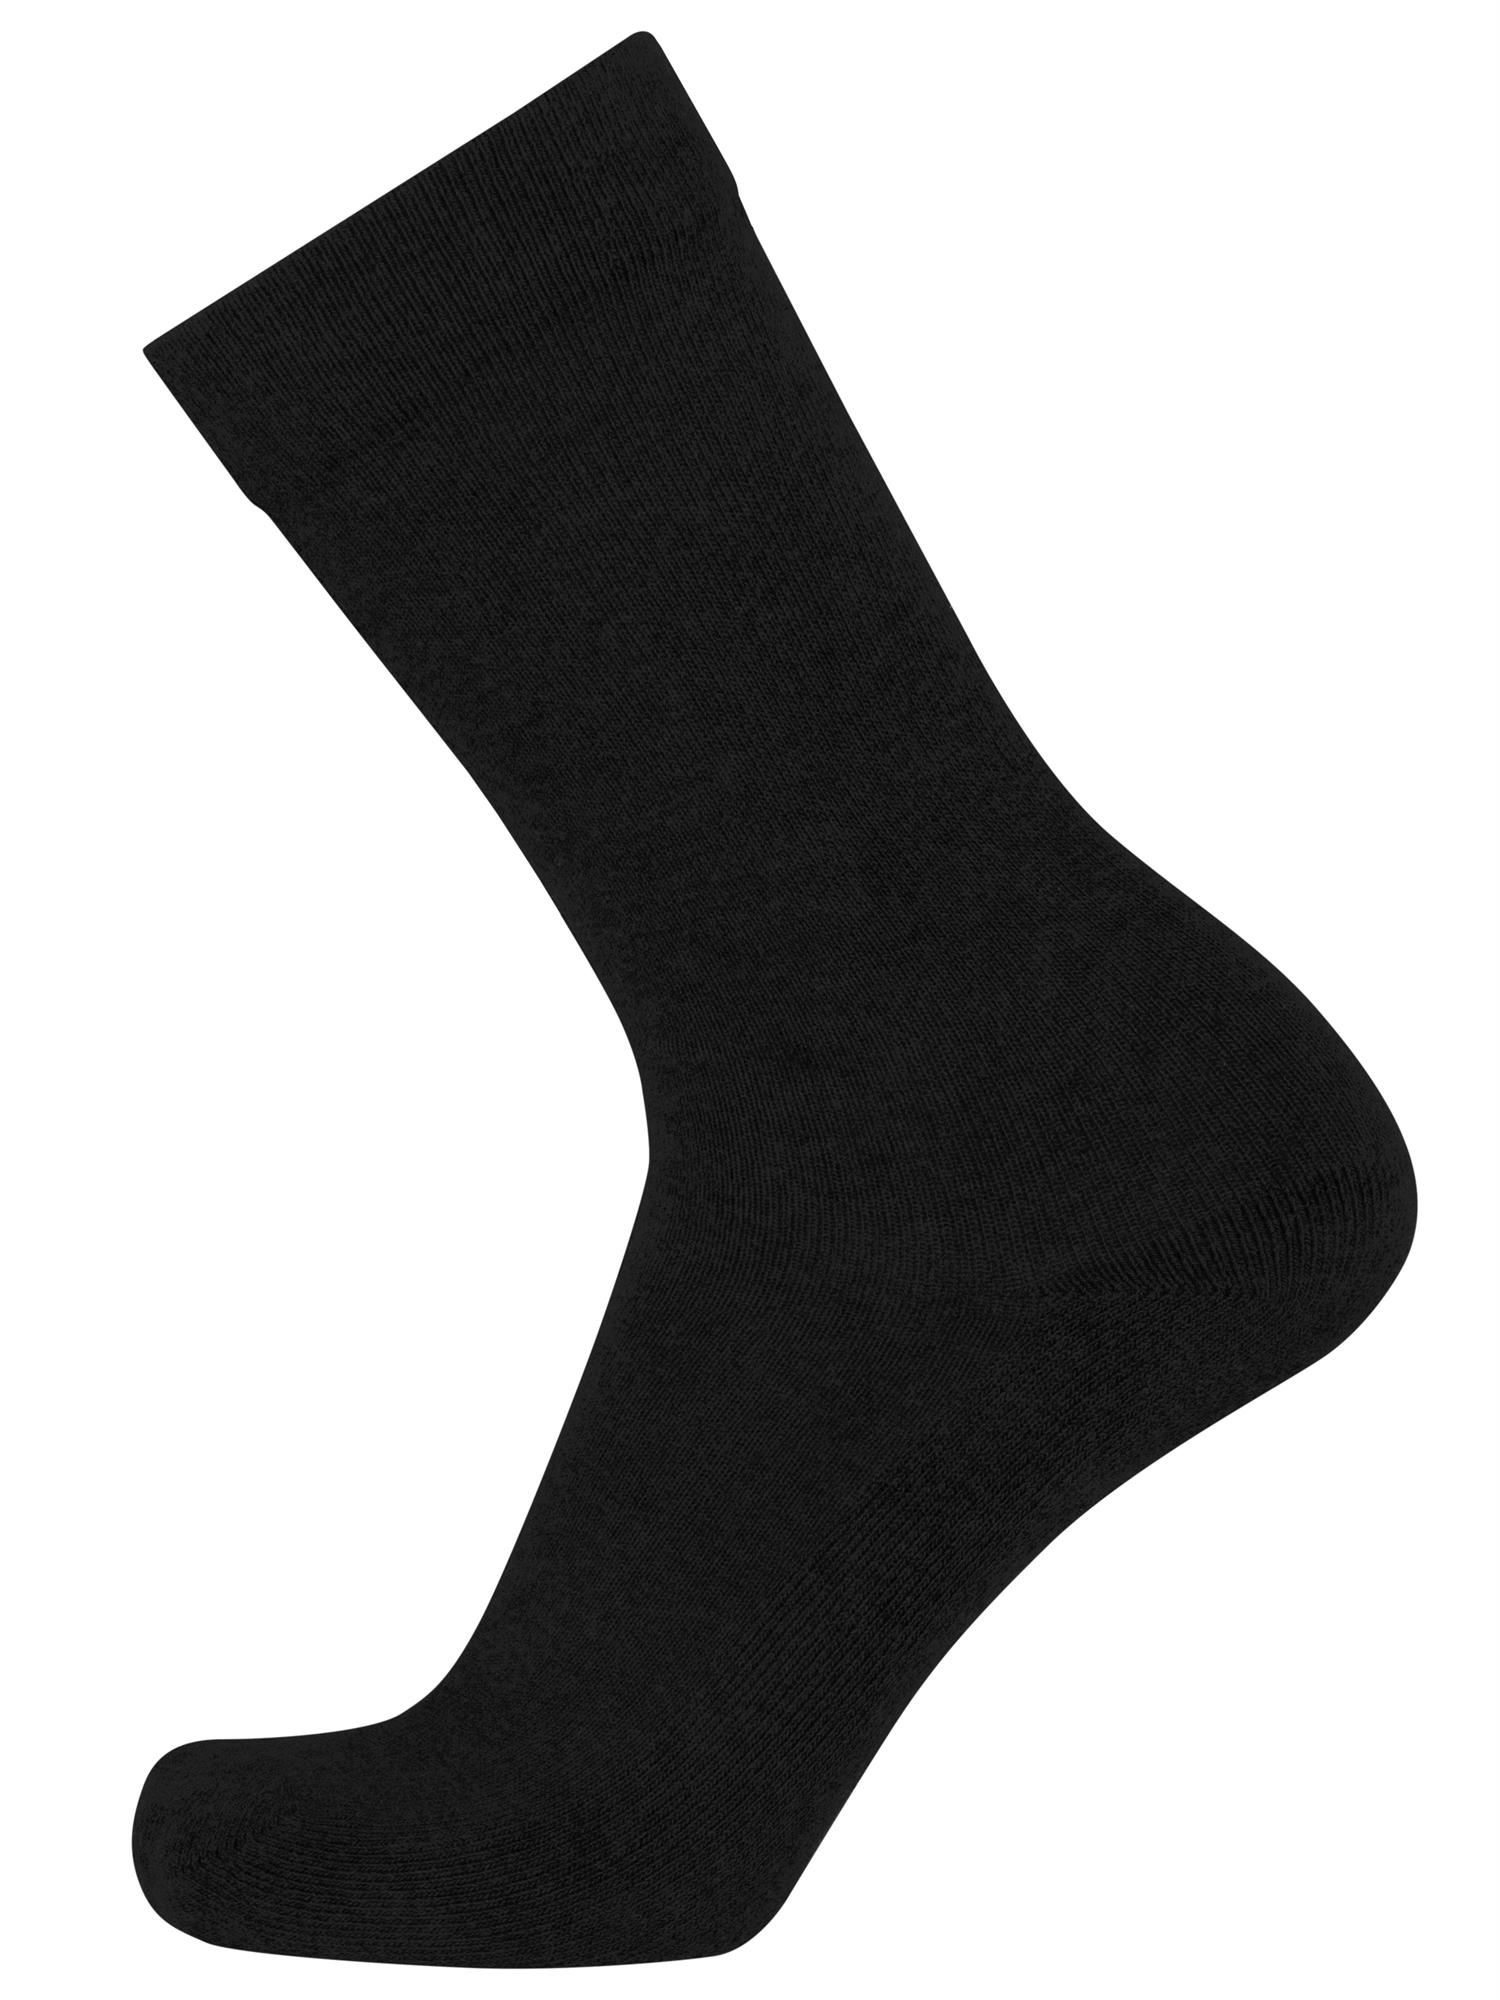 Diabethiker Socken ohne Gummi mit Frotteesohle 6 Paar für Herren und Damen